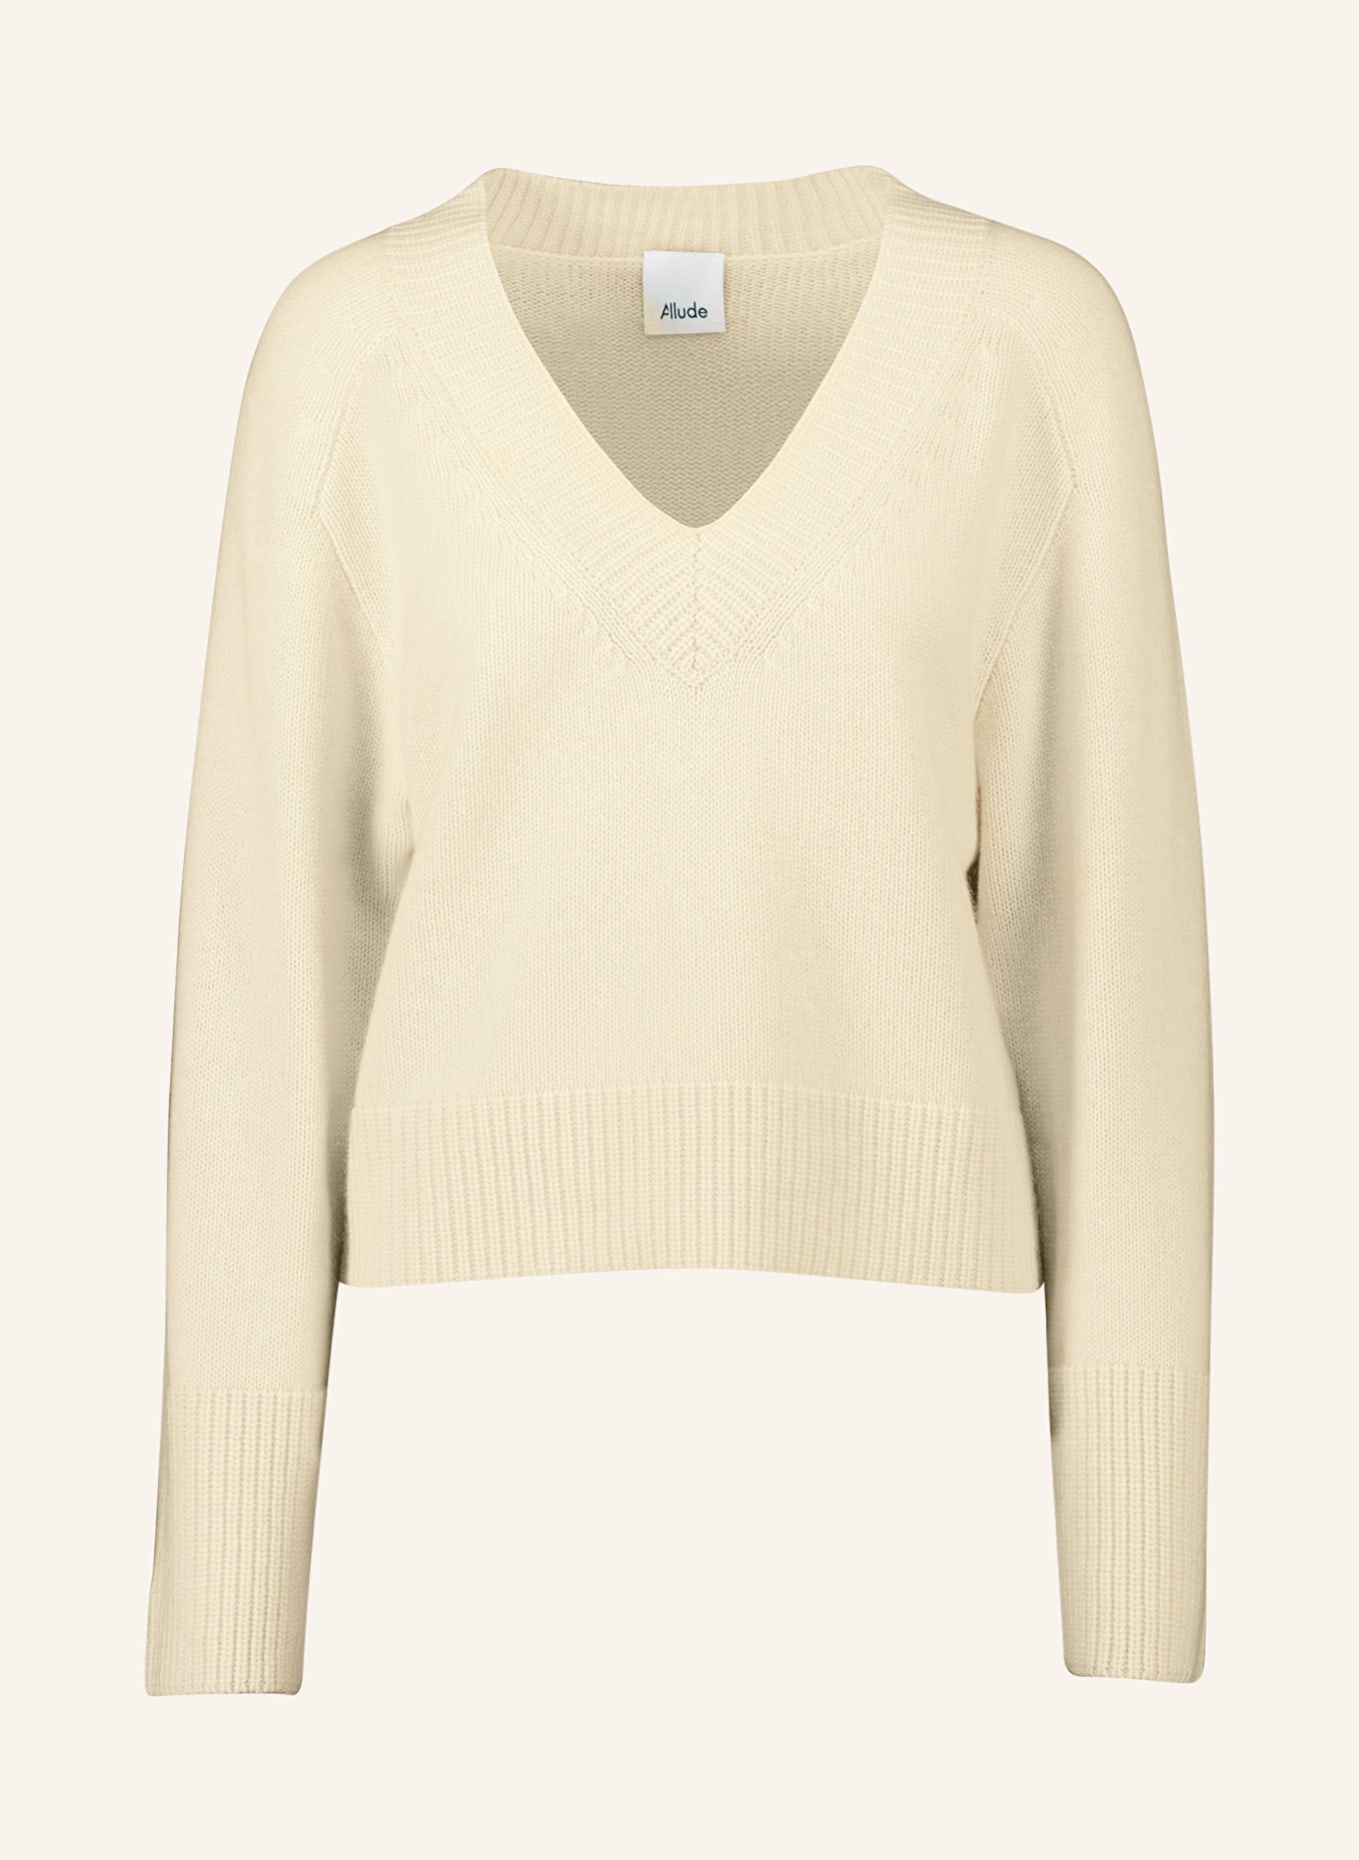 ALLUDE Cashmere-Pullover, Farbe: CREME (Bild 1)